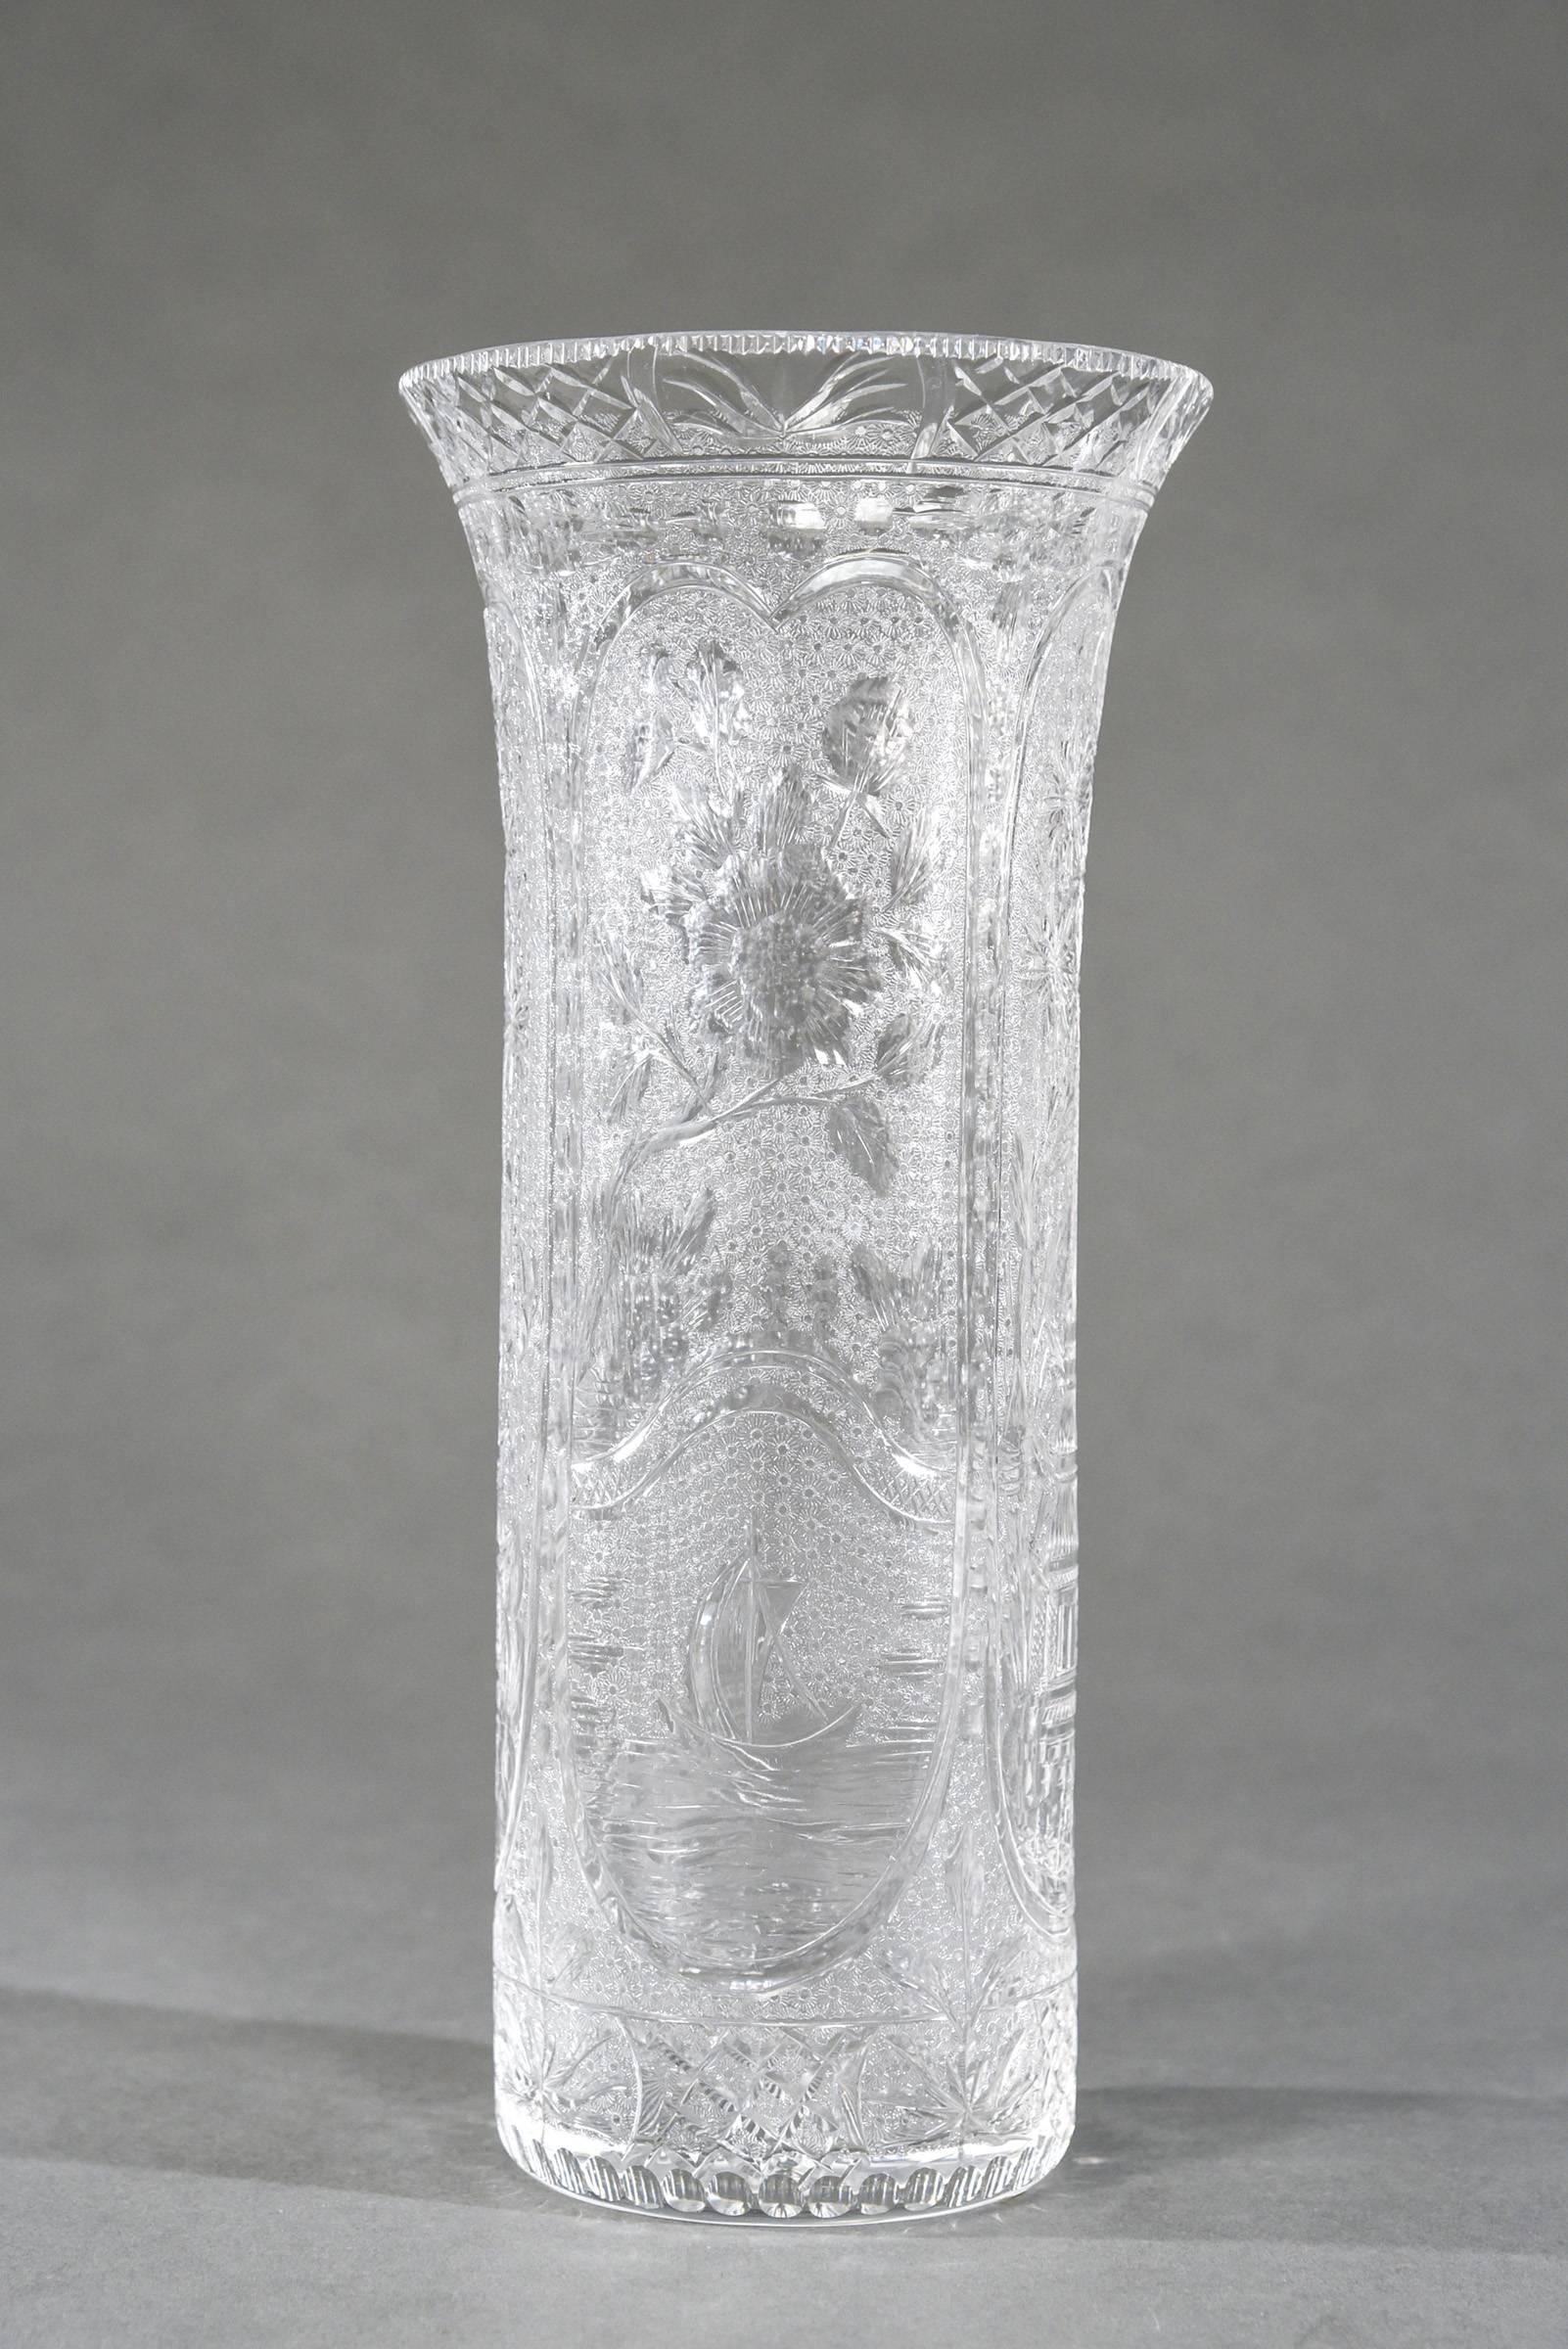 Dies ist eine seltene mundgeblasene Kristallvase, hergestellt von Stevens and Williams, England, um 1910. Die Höhe von 12,25